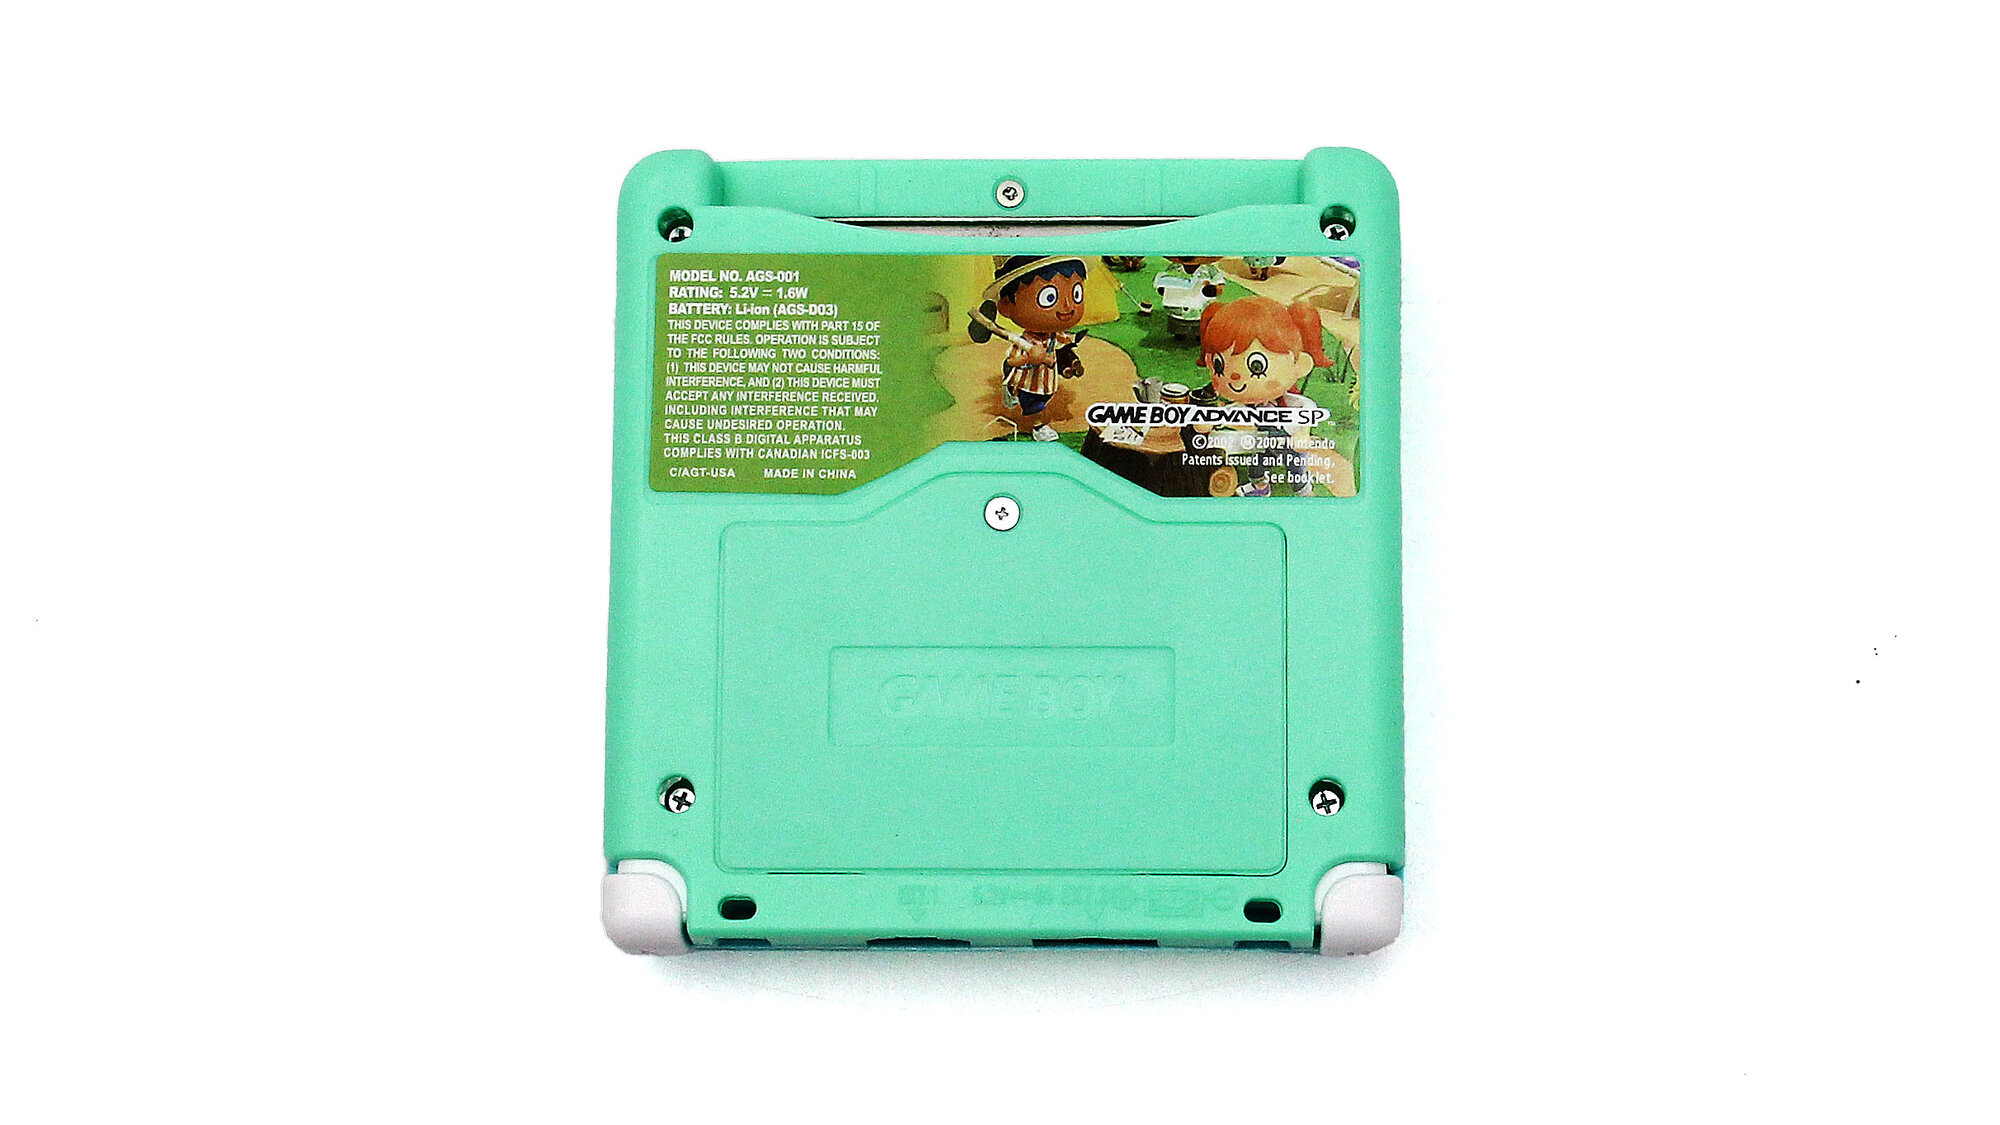 Игровая приставка Nintendo Game Boy Advance SP (AGS-101) Animal Crossing Edition